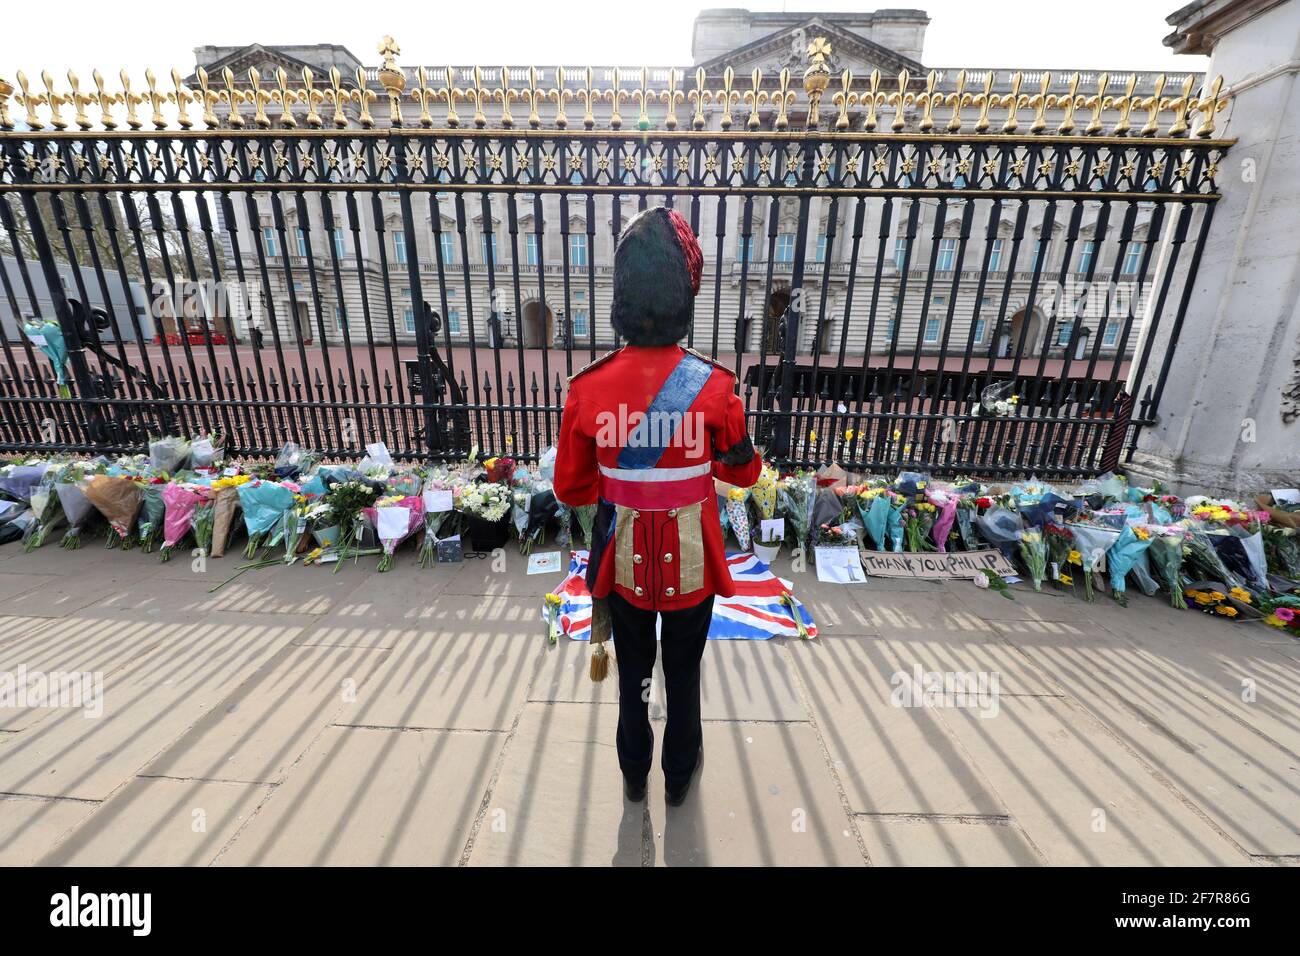 London, Großbritannien. April 2021. Blumengebete, die von Menschen im Buckingham Palace nach der Bekanntgabe des Todes von Prinz Philip abgelegt wurden.Credit: Paul Brown/Alamy Live News Stockfoto